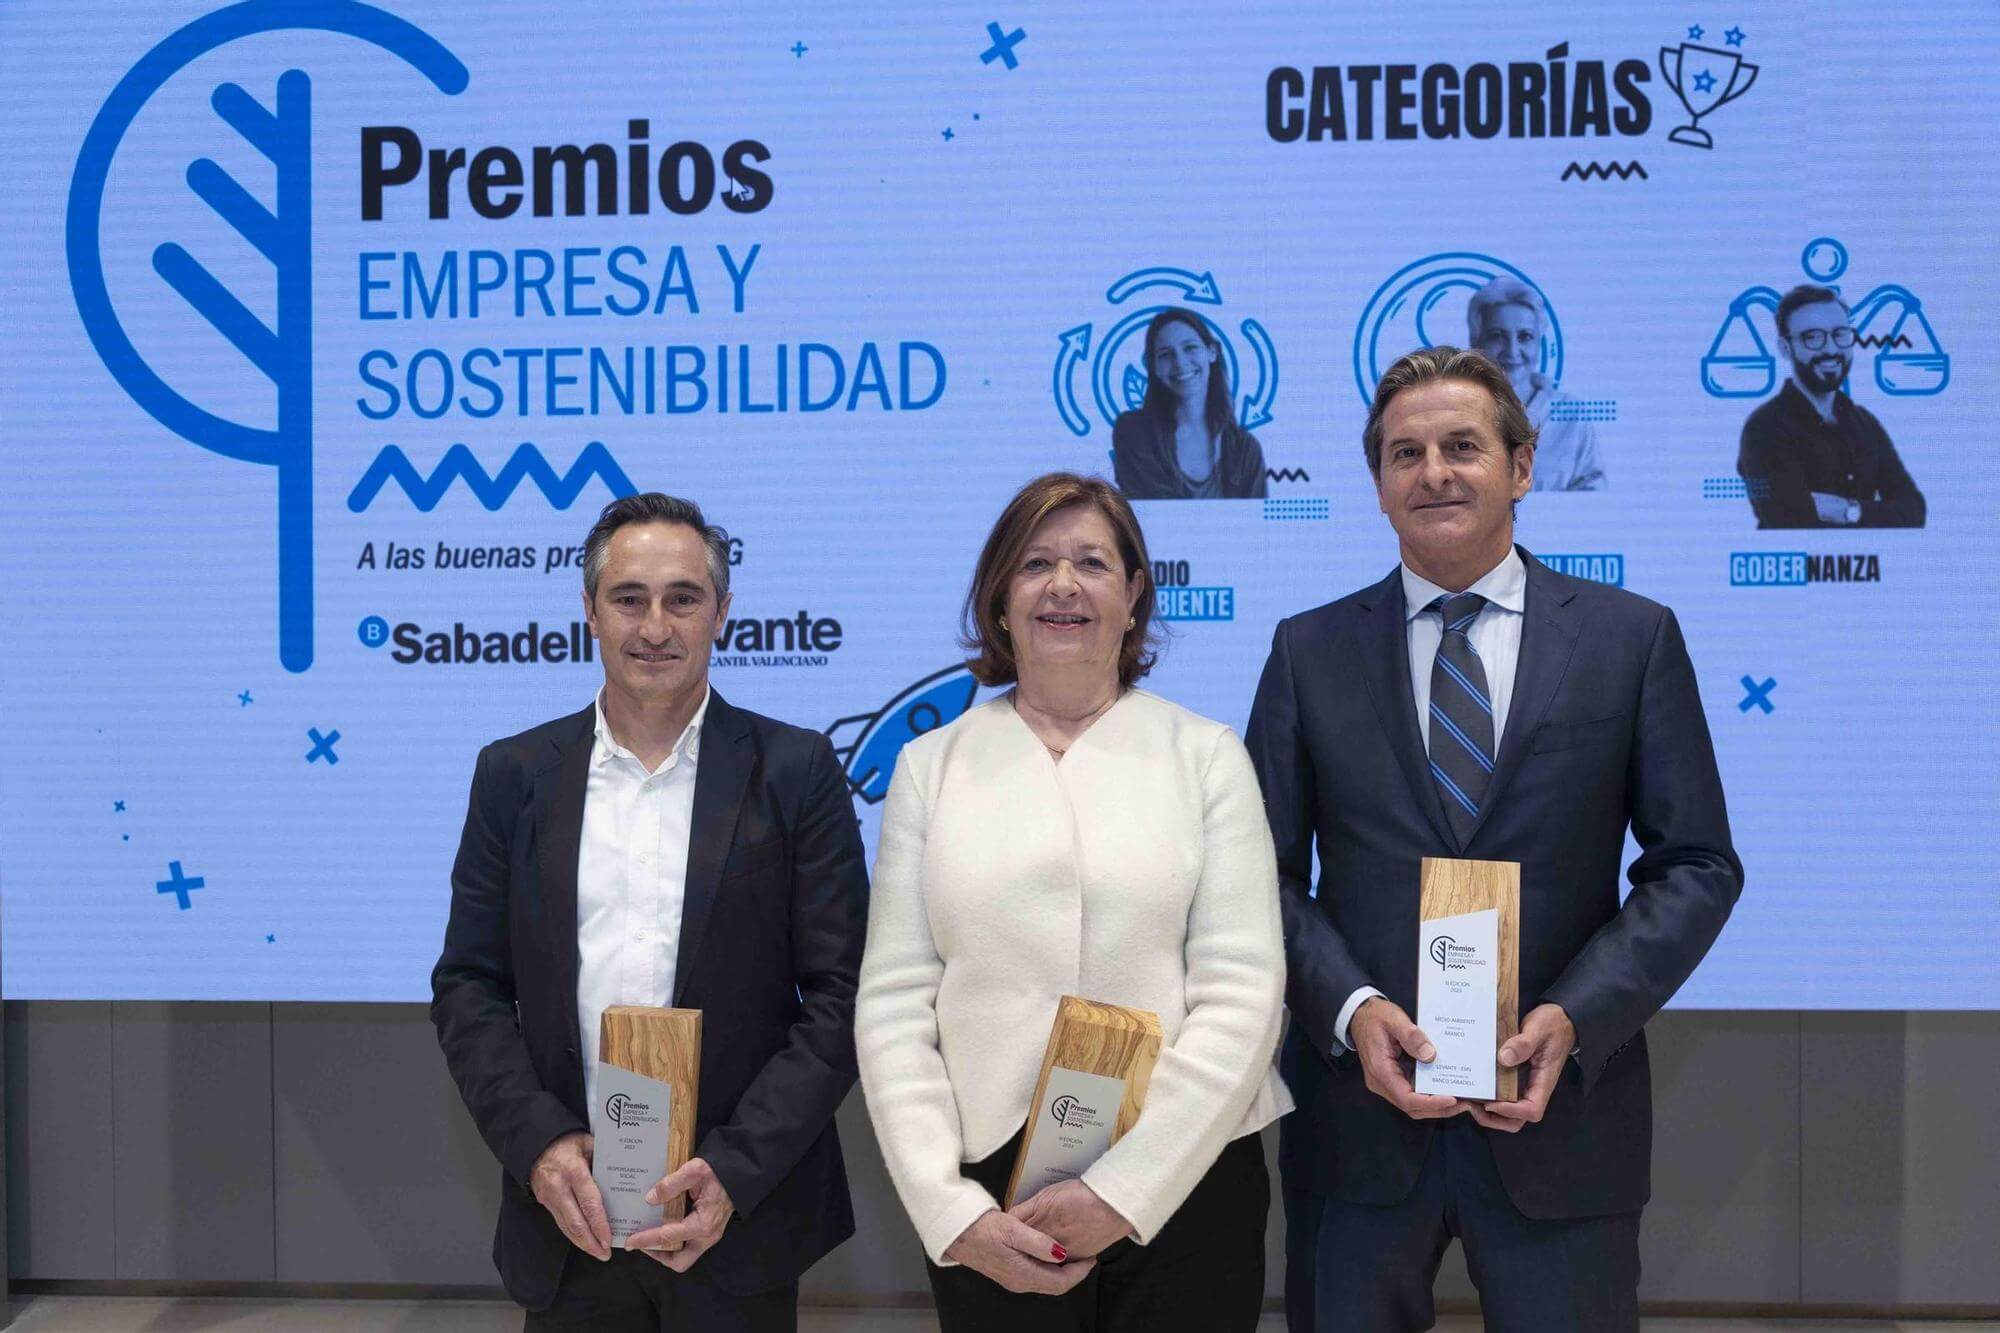 Aranco recibe el premio Empresa y Sostenibilidad en la categoría de Medioambiente